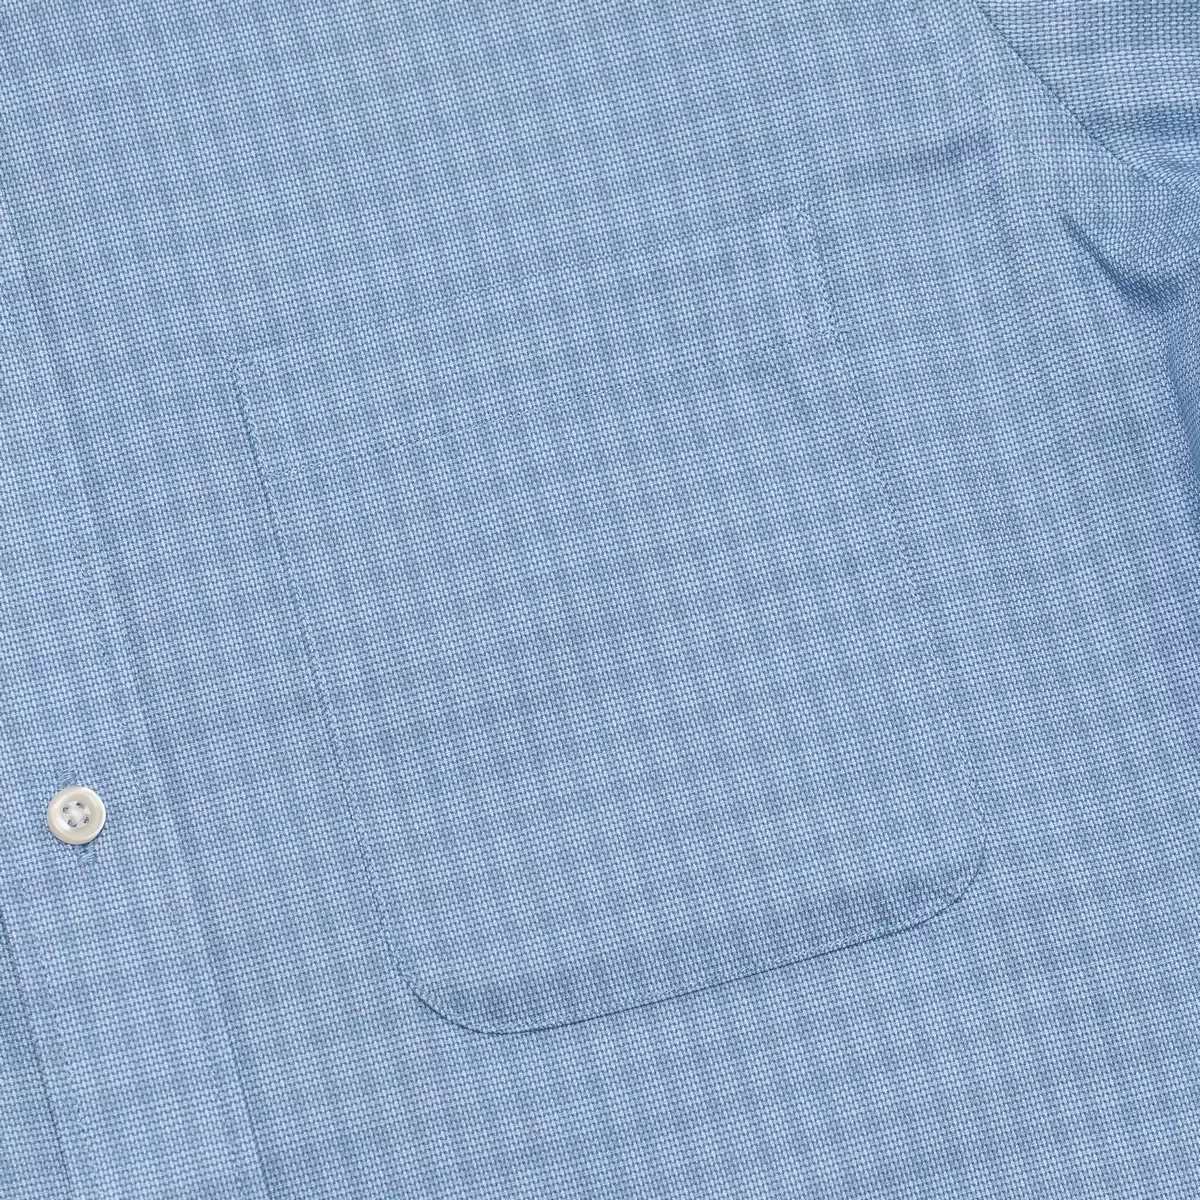 Kirkland Signature 科克蘭 男長袖鈕扣領印花襯衫 藍色格紋 領圍 16吋 X 袖長 32/33吋